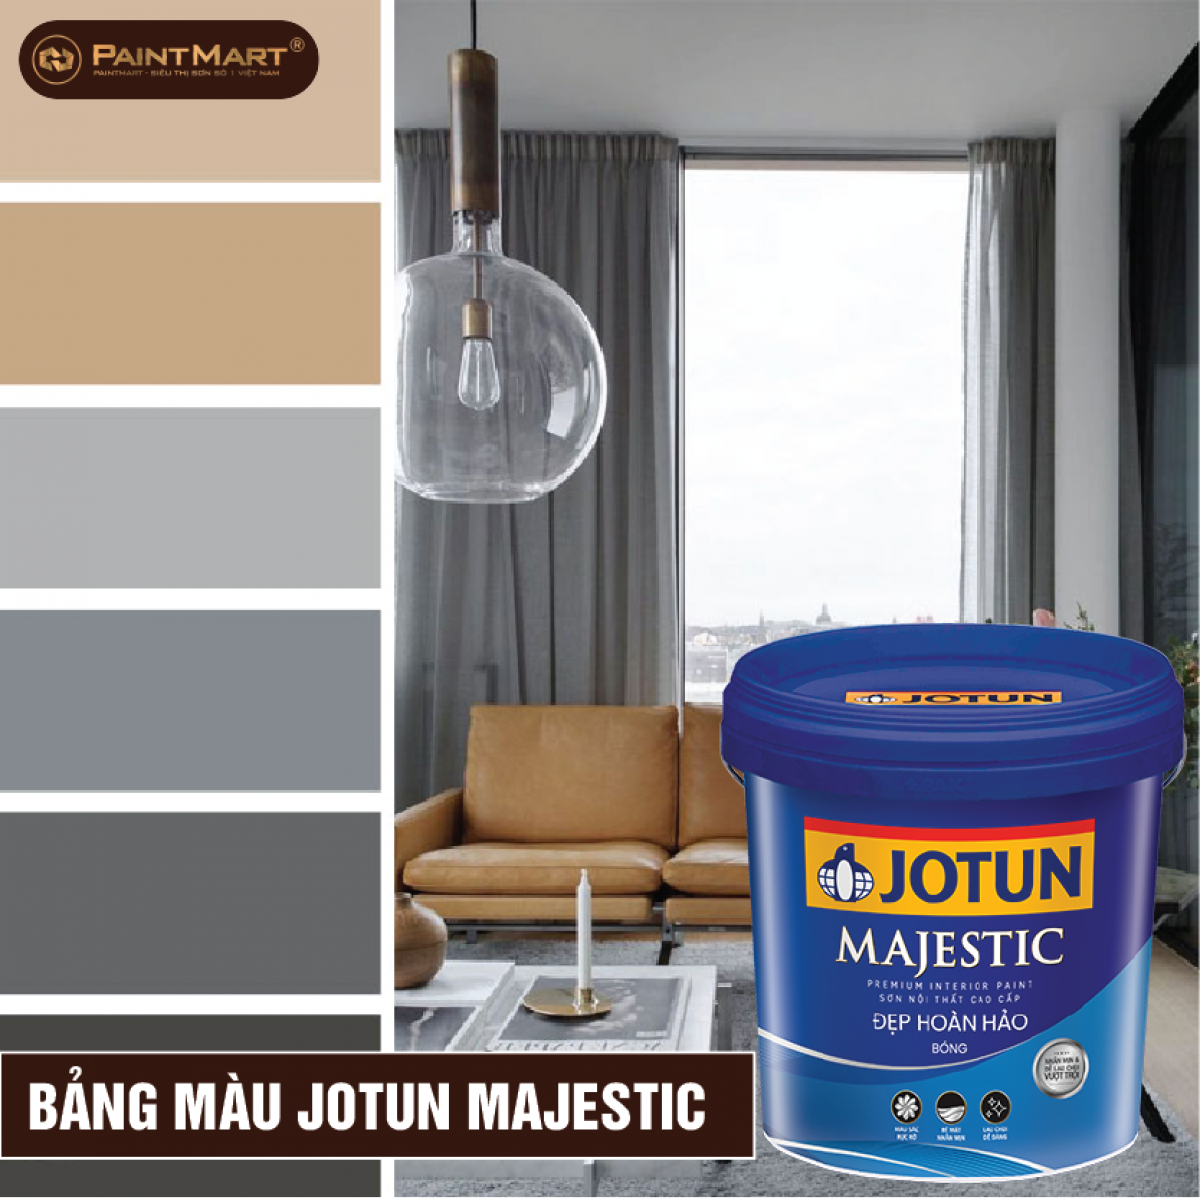 Bảng màu sơn nội thất: Chọn sơn nội thất phù hợp cho ngôi nhà của bạn với bảng màu sơn nội thất đa dạng và đẹp mắt. Đây là công cụ hữu ích để bạn có thể tìm ra gam màu sơn nội thất hoàn hảo cho các không gian sống của mình.